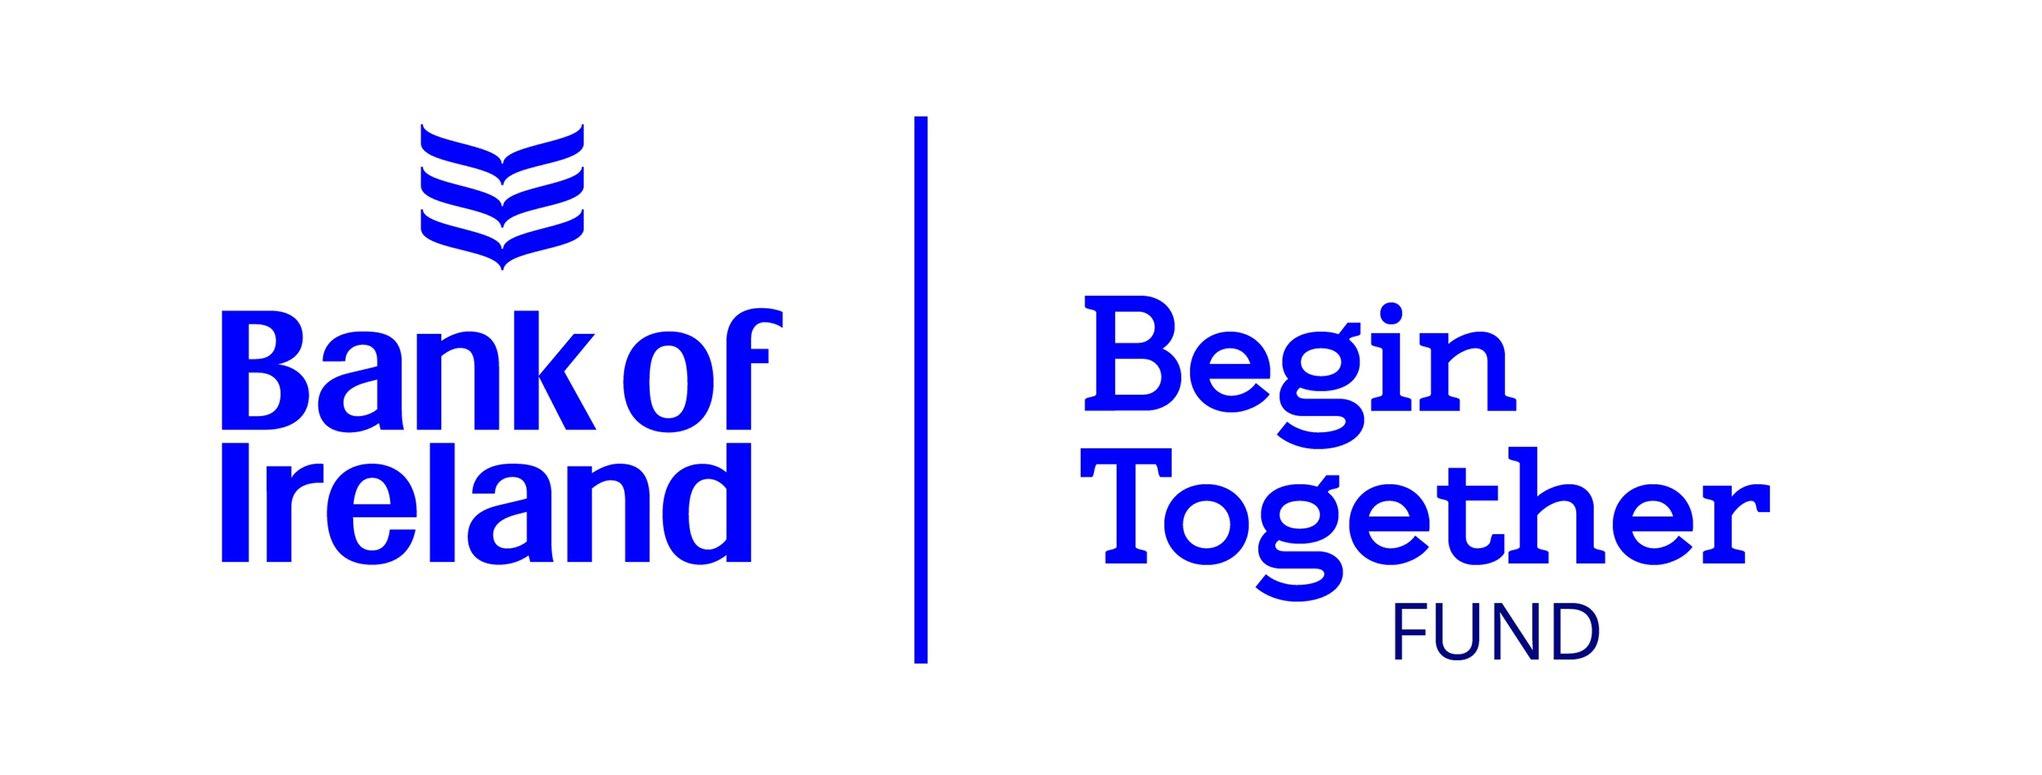 bio fund logo